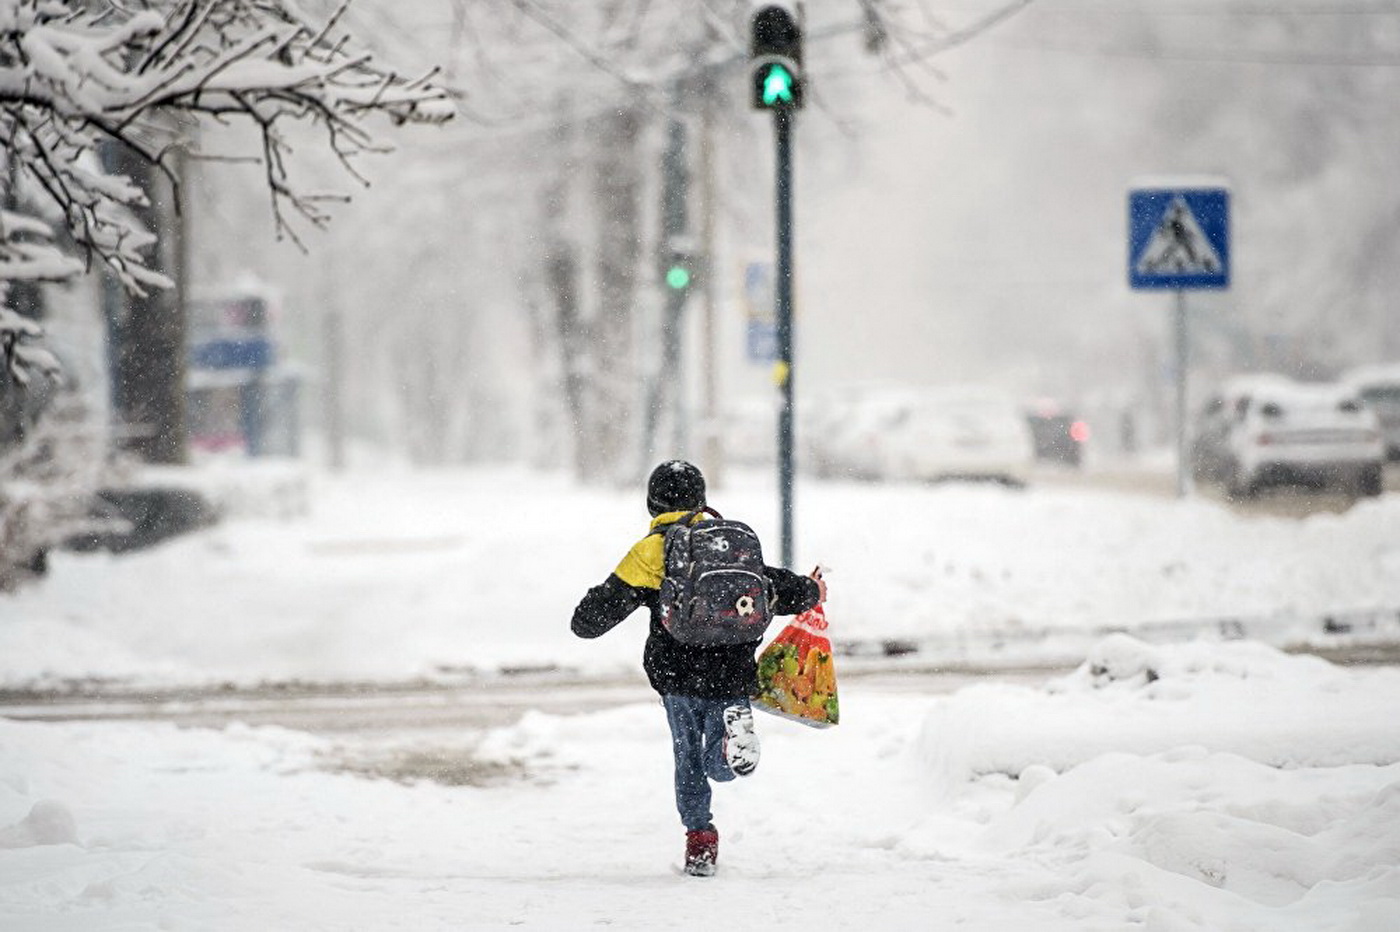 У детей зимние каникулы. ГАИ призывает быть внимательными на дорогах